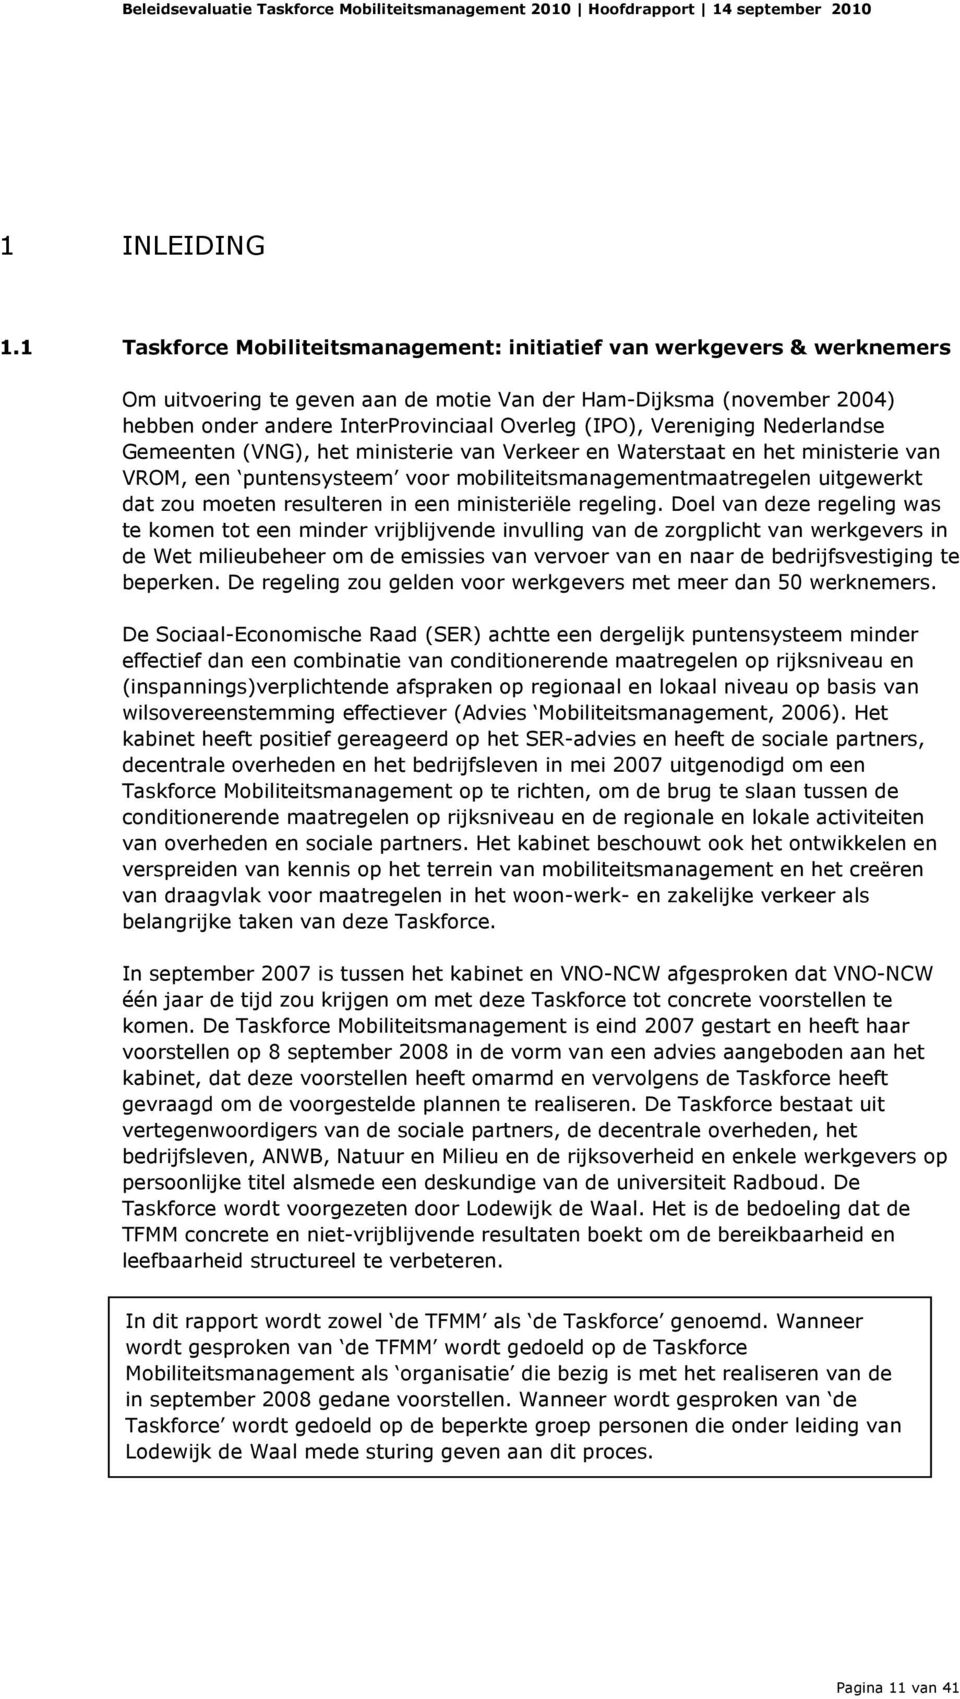 Vereniging Nederlandse Gemeenten (VNG), het ministerie van Verkeer en Waterstaat en het ministerie van VROM, een puntensysteem voor mobiliteitsmanagementmaatregelen uitgewerkt dat zou moeten